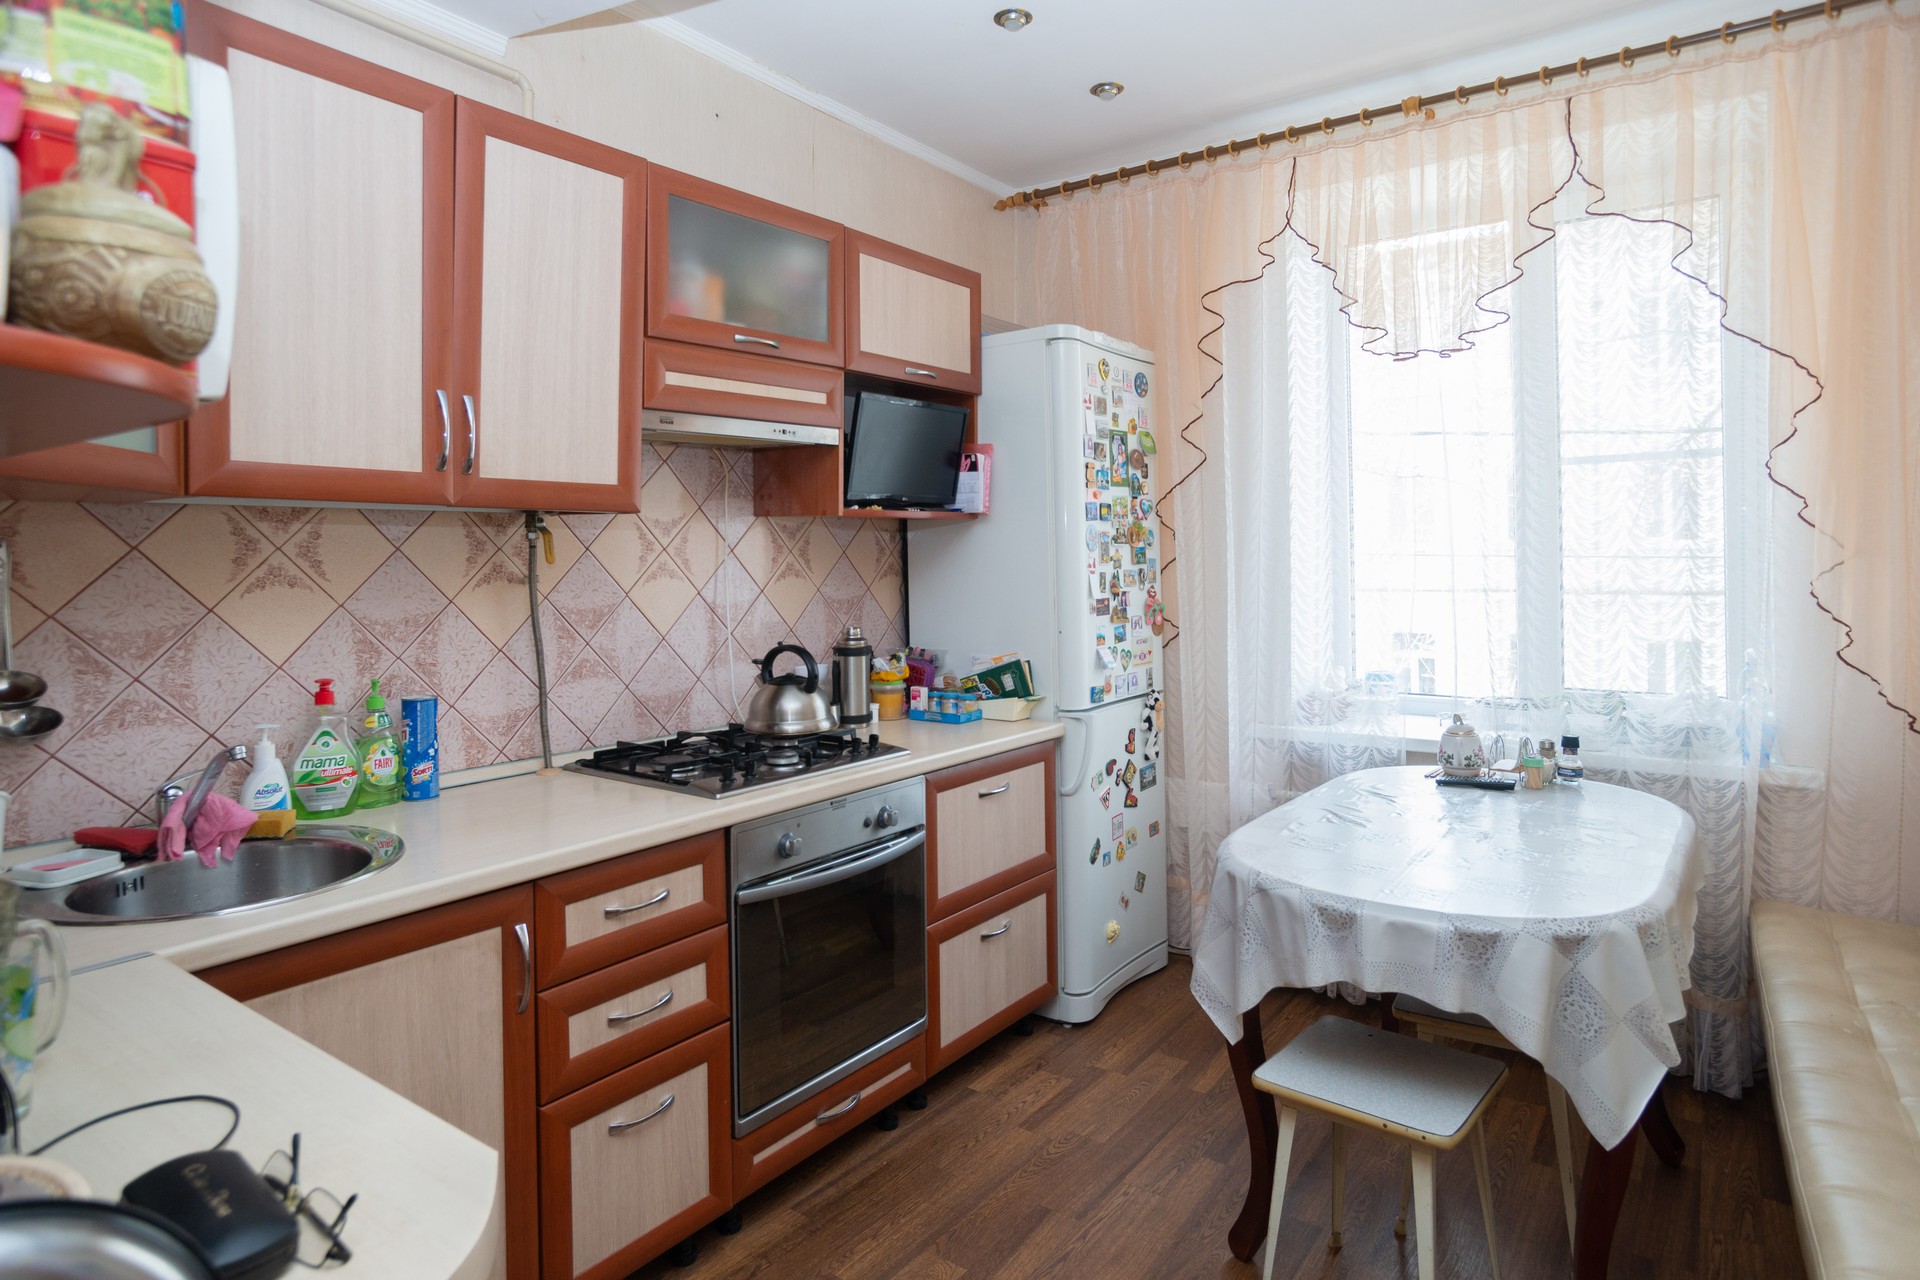 Саратов снять 1 комнатную квартиру ленинский район